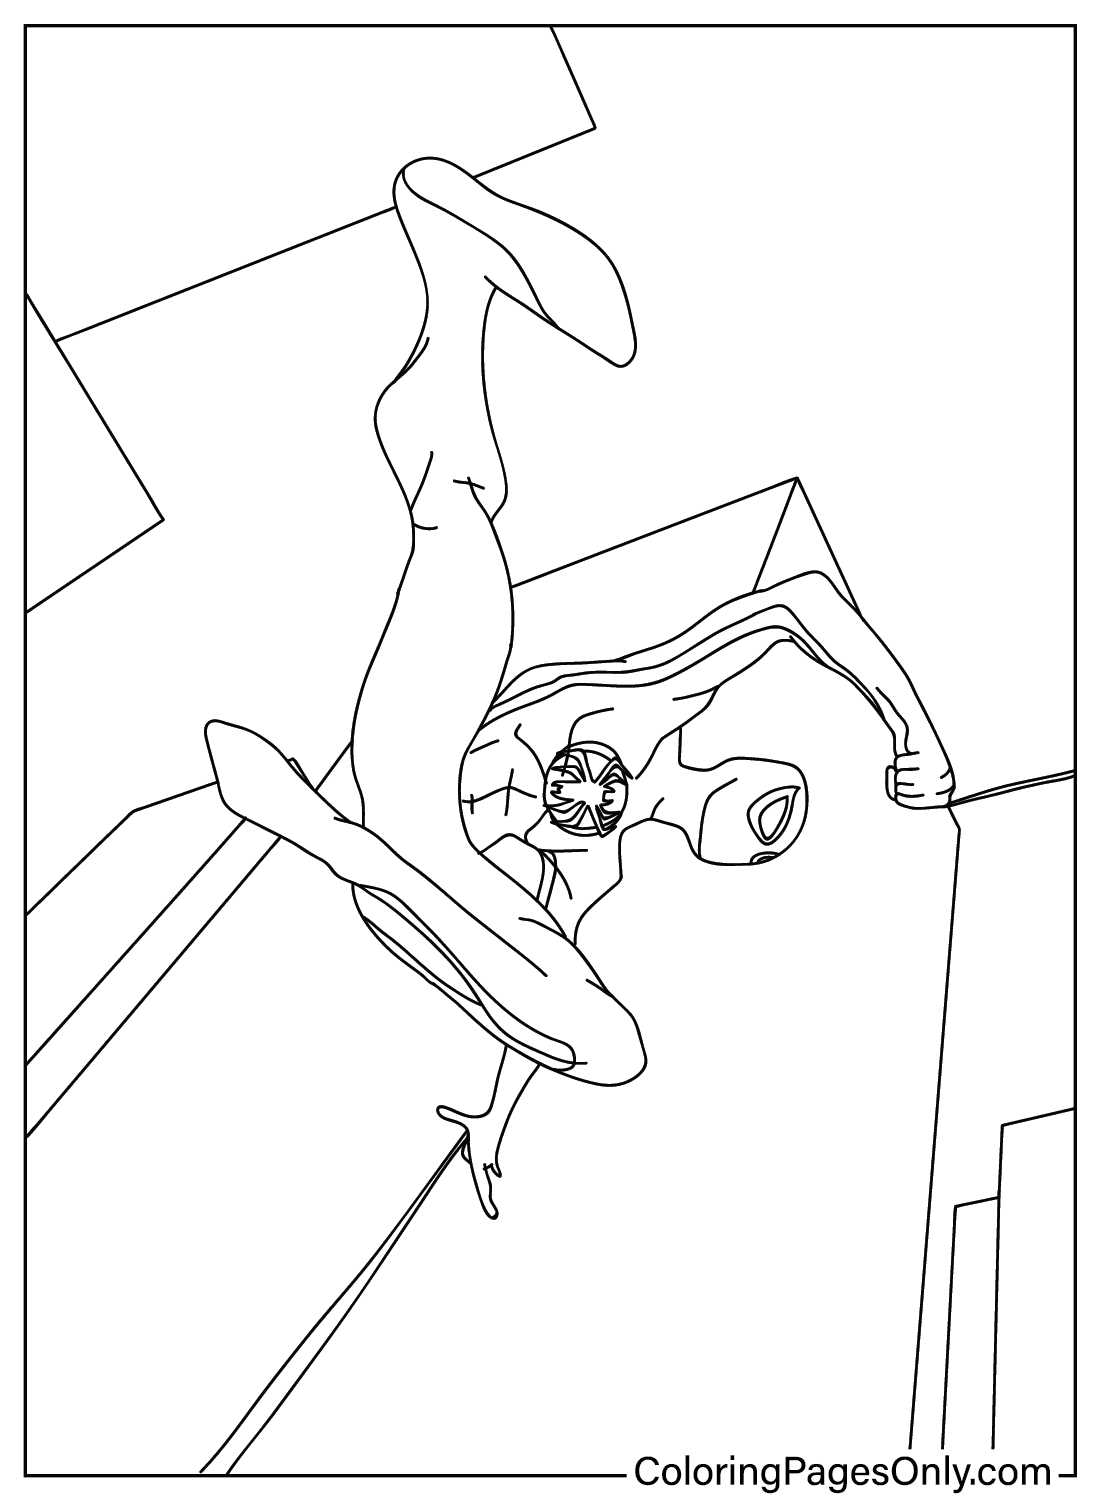 Dibujos para colorear de Spider-Man a través de la araña para imprimir de Spider-Man: A través de la araña